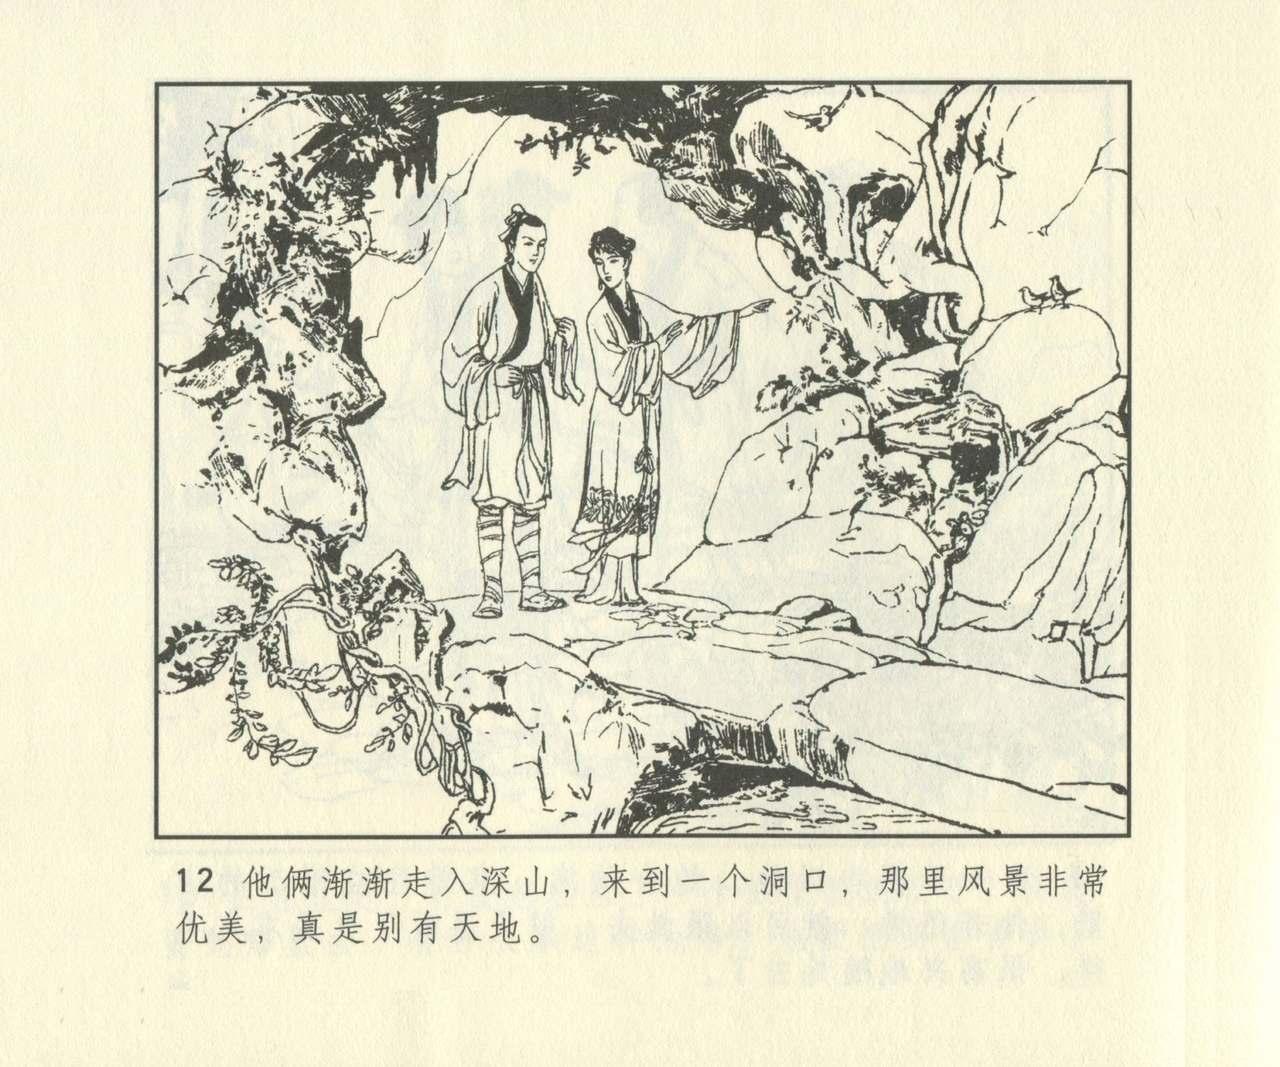 聊斋志异 张玮等绘 天津人民美术出版社 卷二十一 ~ 三十 628